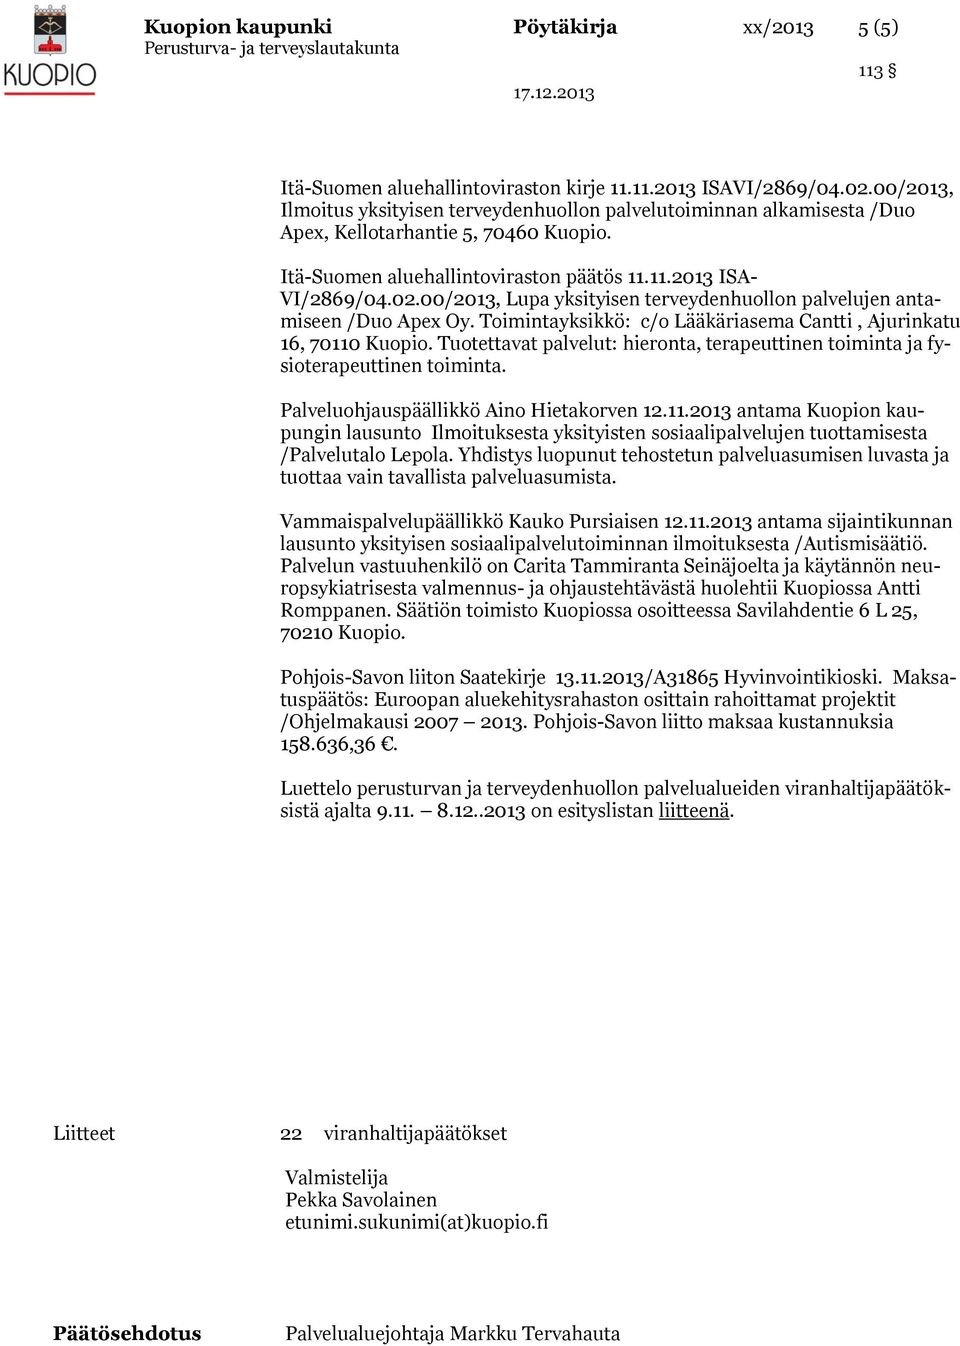 00/2013, Lupa yksityisen terveydenhuollon palvelujen antamiseen /Duo Apex Oy. Toimintayksikkö: c/o Lääkäriasema Cantti, Ajurinkatu 16, 70110 Kuopio.